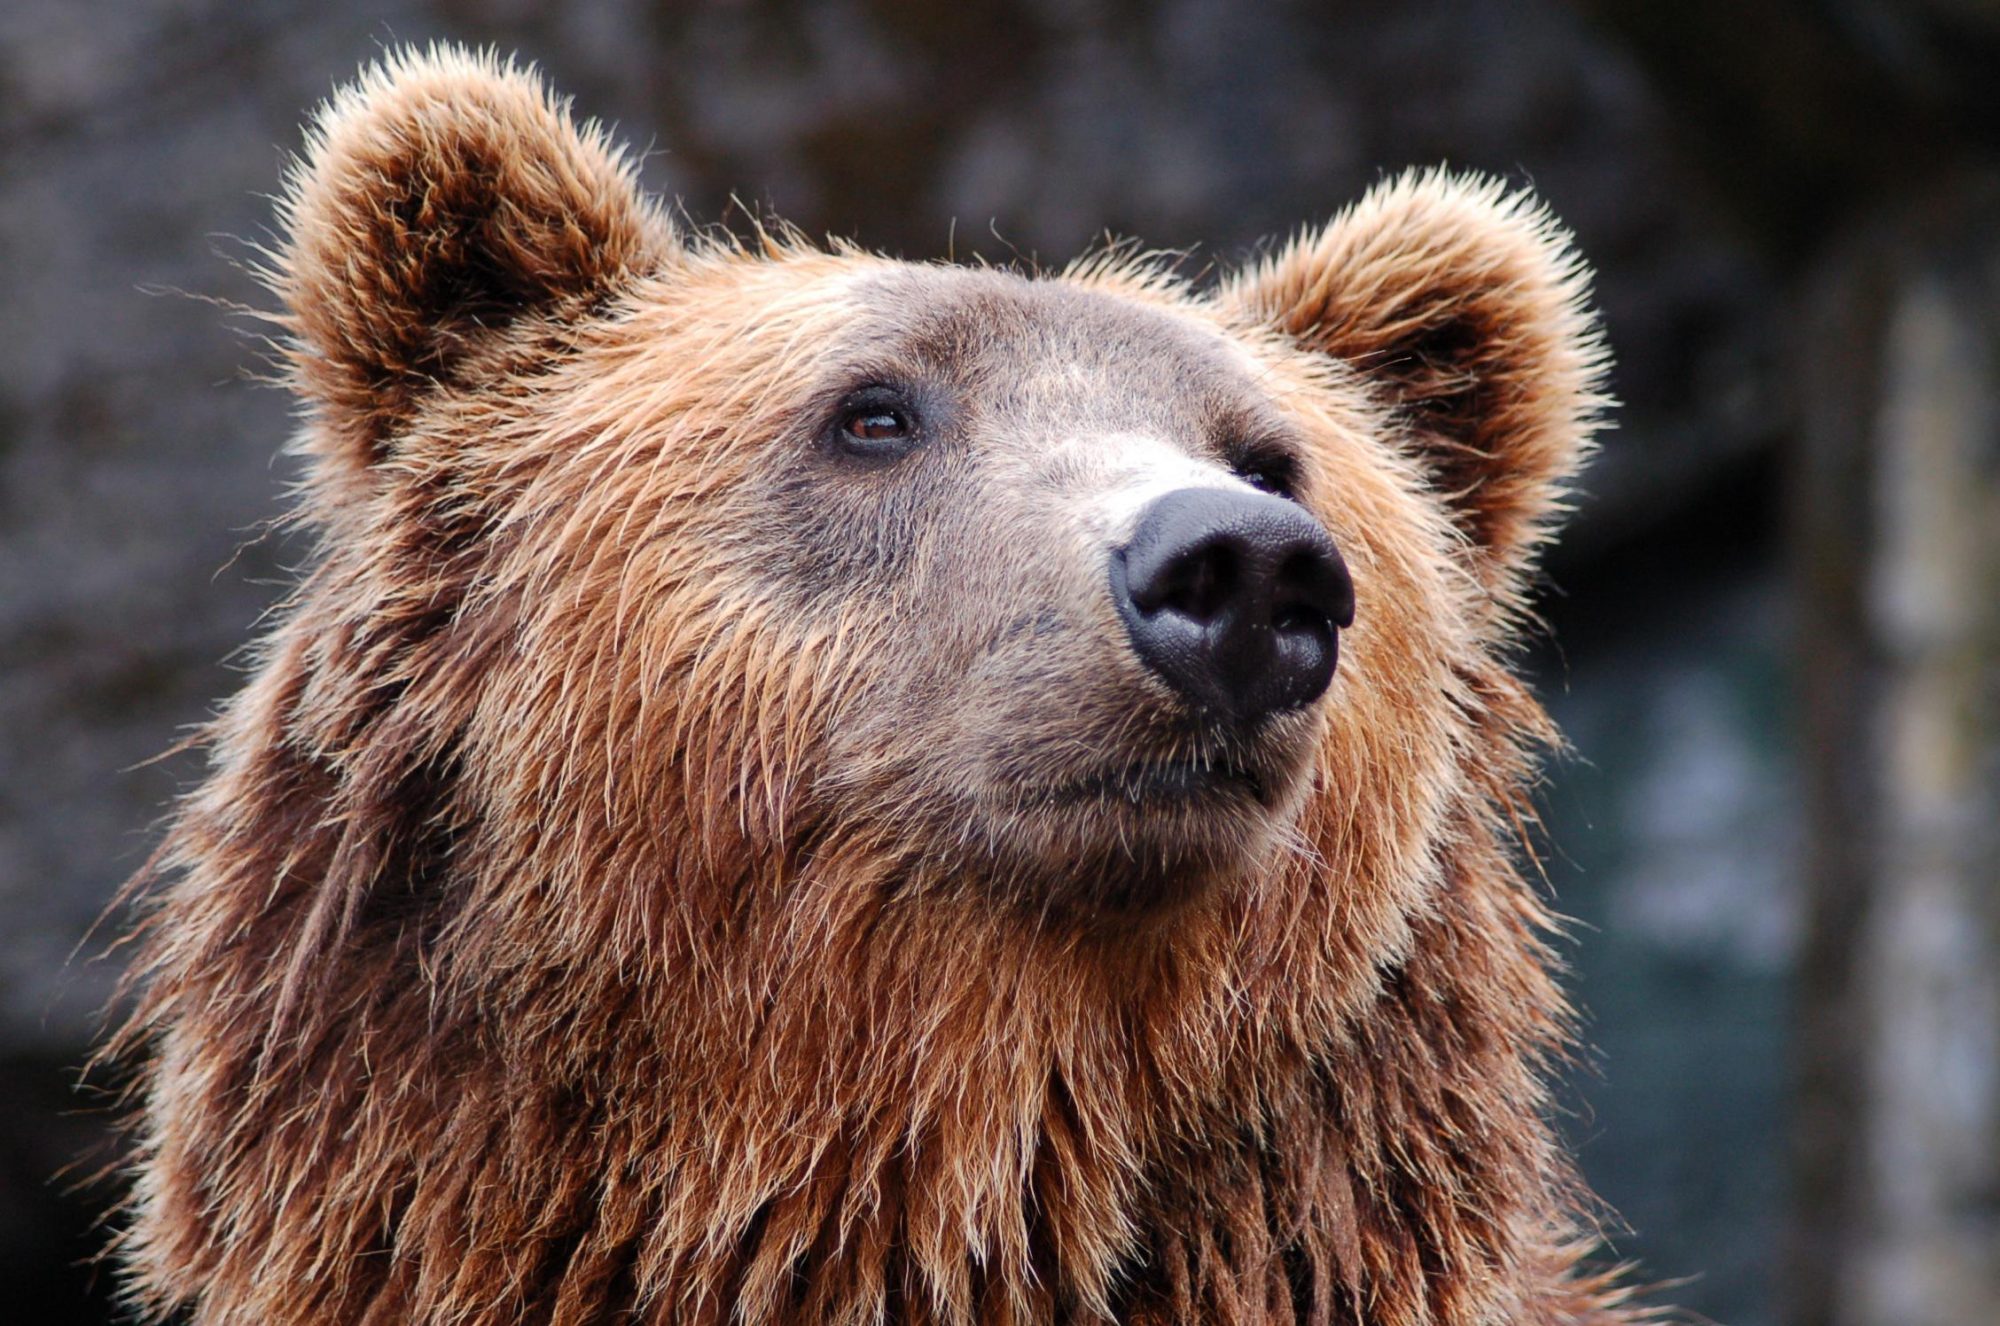 Avistamiento del oso pardo, una excelente excusa para recorrer los Parques Naturales de Asturias